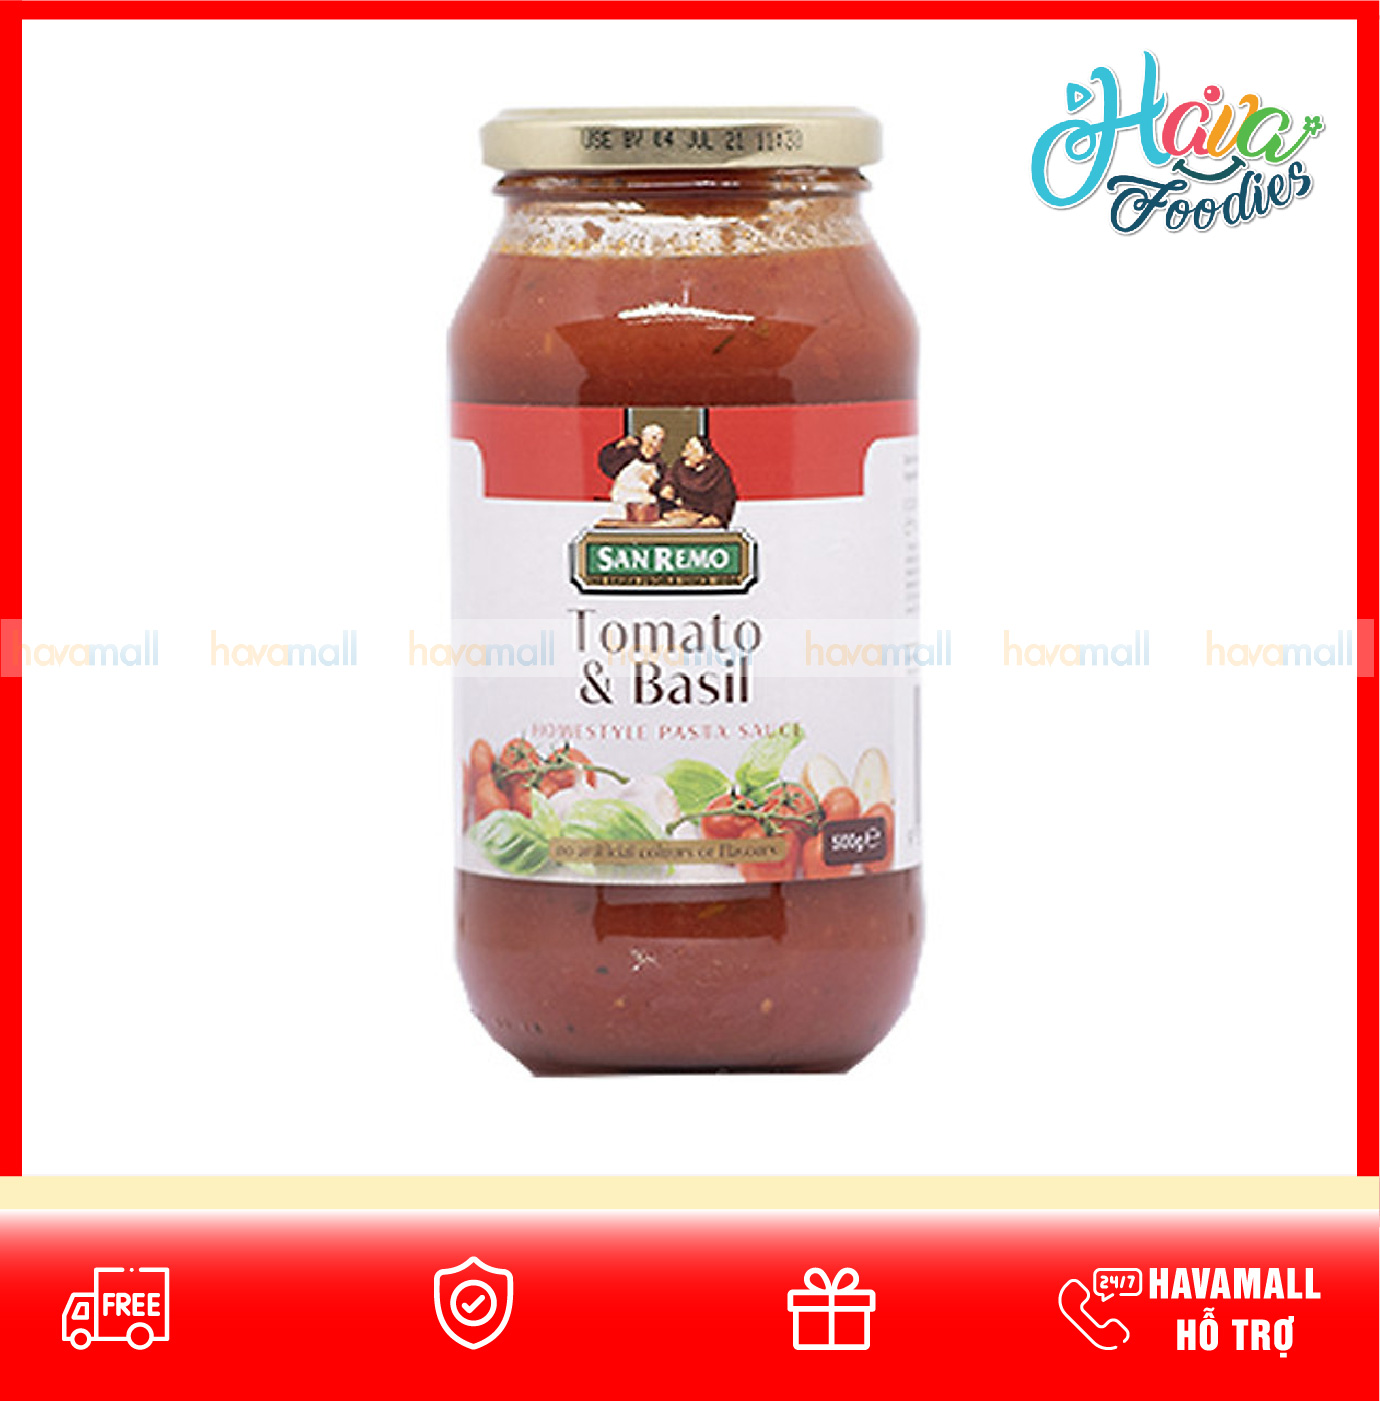 Sốt mì ý cà chua &amp; rau quế - Tomato and Basil San Remo 500g